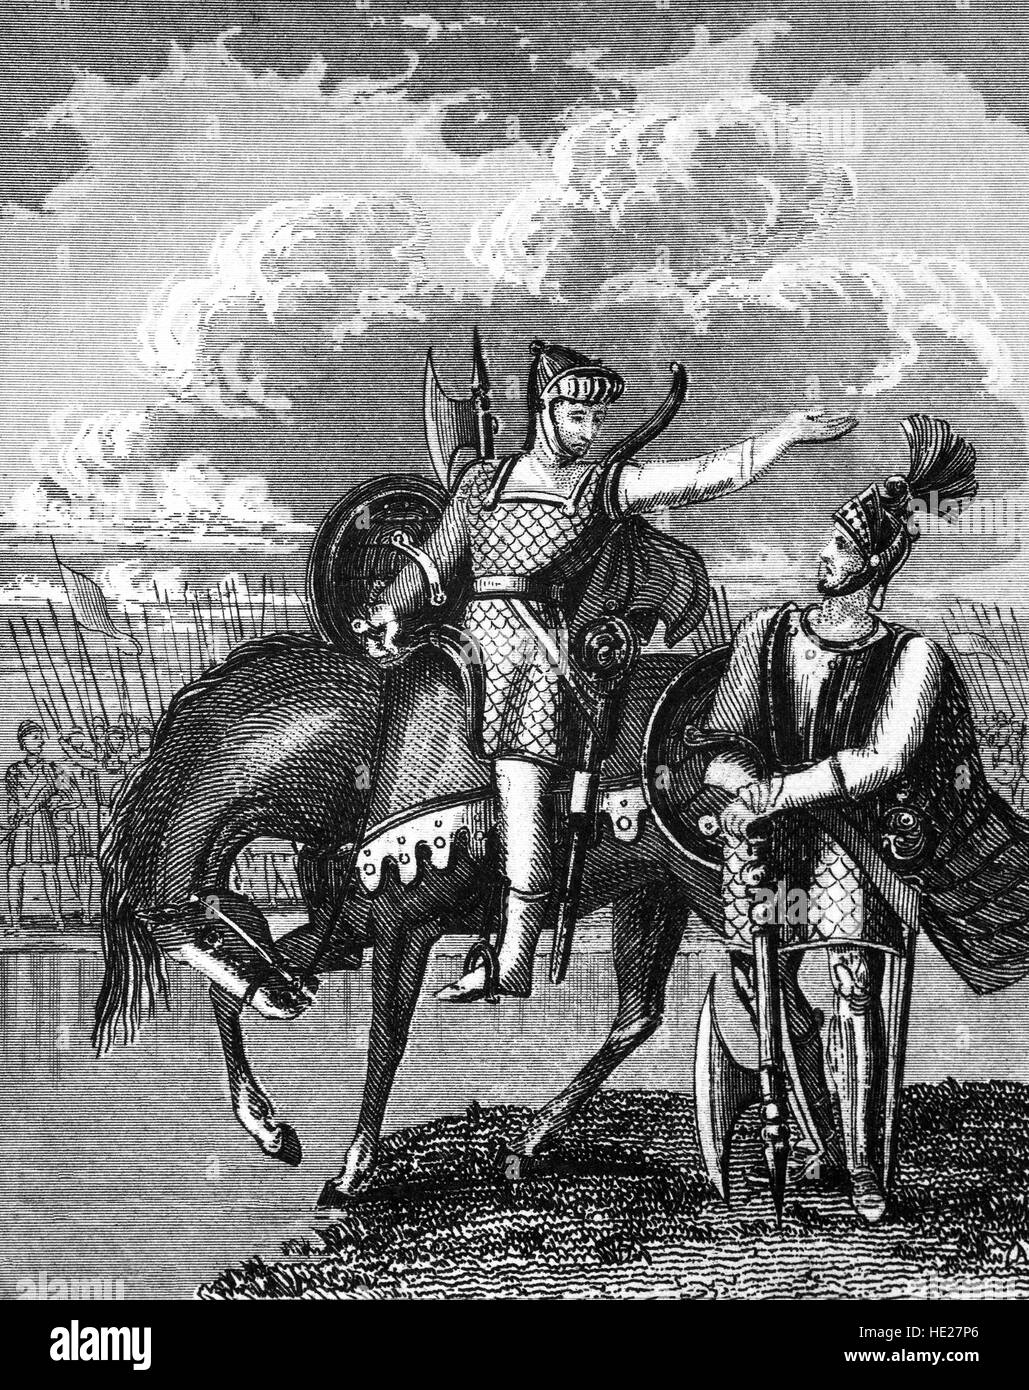 Robert the Bruce (1274 – 1329), wer hat Waffen gegen beide Edward ich und Edward II. von England und die united Hochland und Tiefland in einem erbitterten Kampf für die Freiheit mit dem Tiefland Ritter, Sir William Wallace (1272 – 1305). Seine entscheidende Sieg über Edward II Armee bei Bannockburn 1314 gewann schließlich die Freiheit, die, der er für gekämpft hatte. Bruce wurde von 1306-1329 König von Schottland. Stockfoto